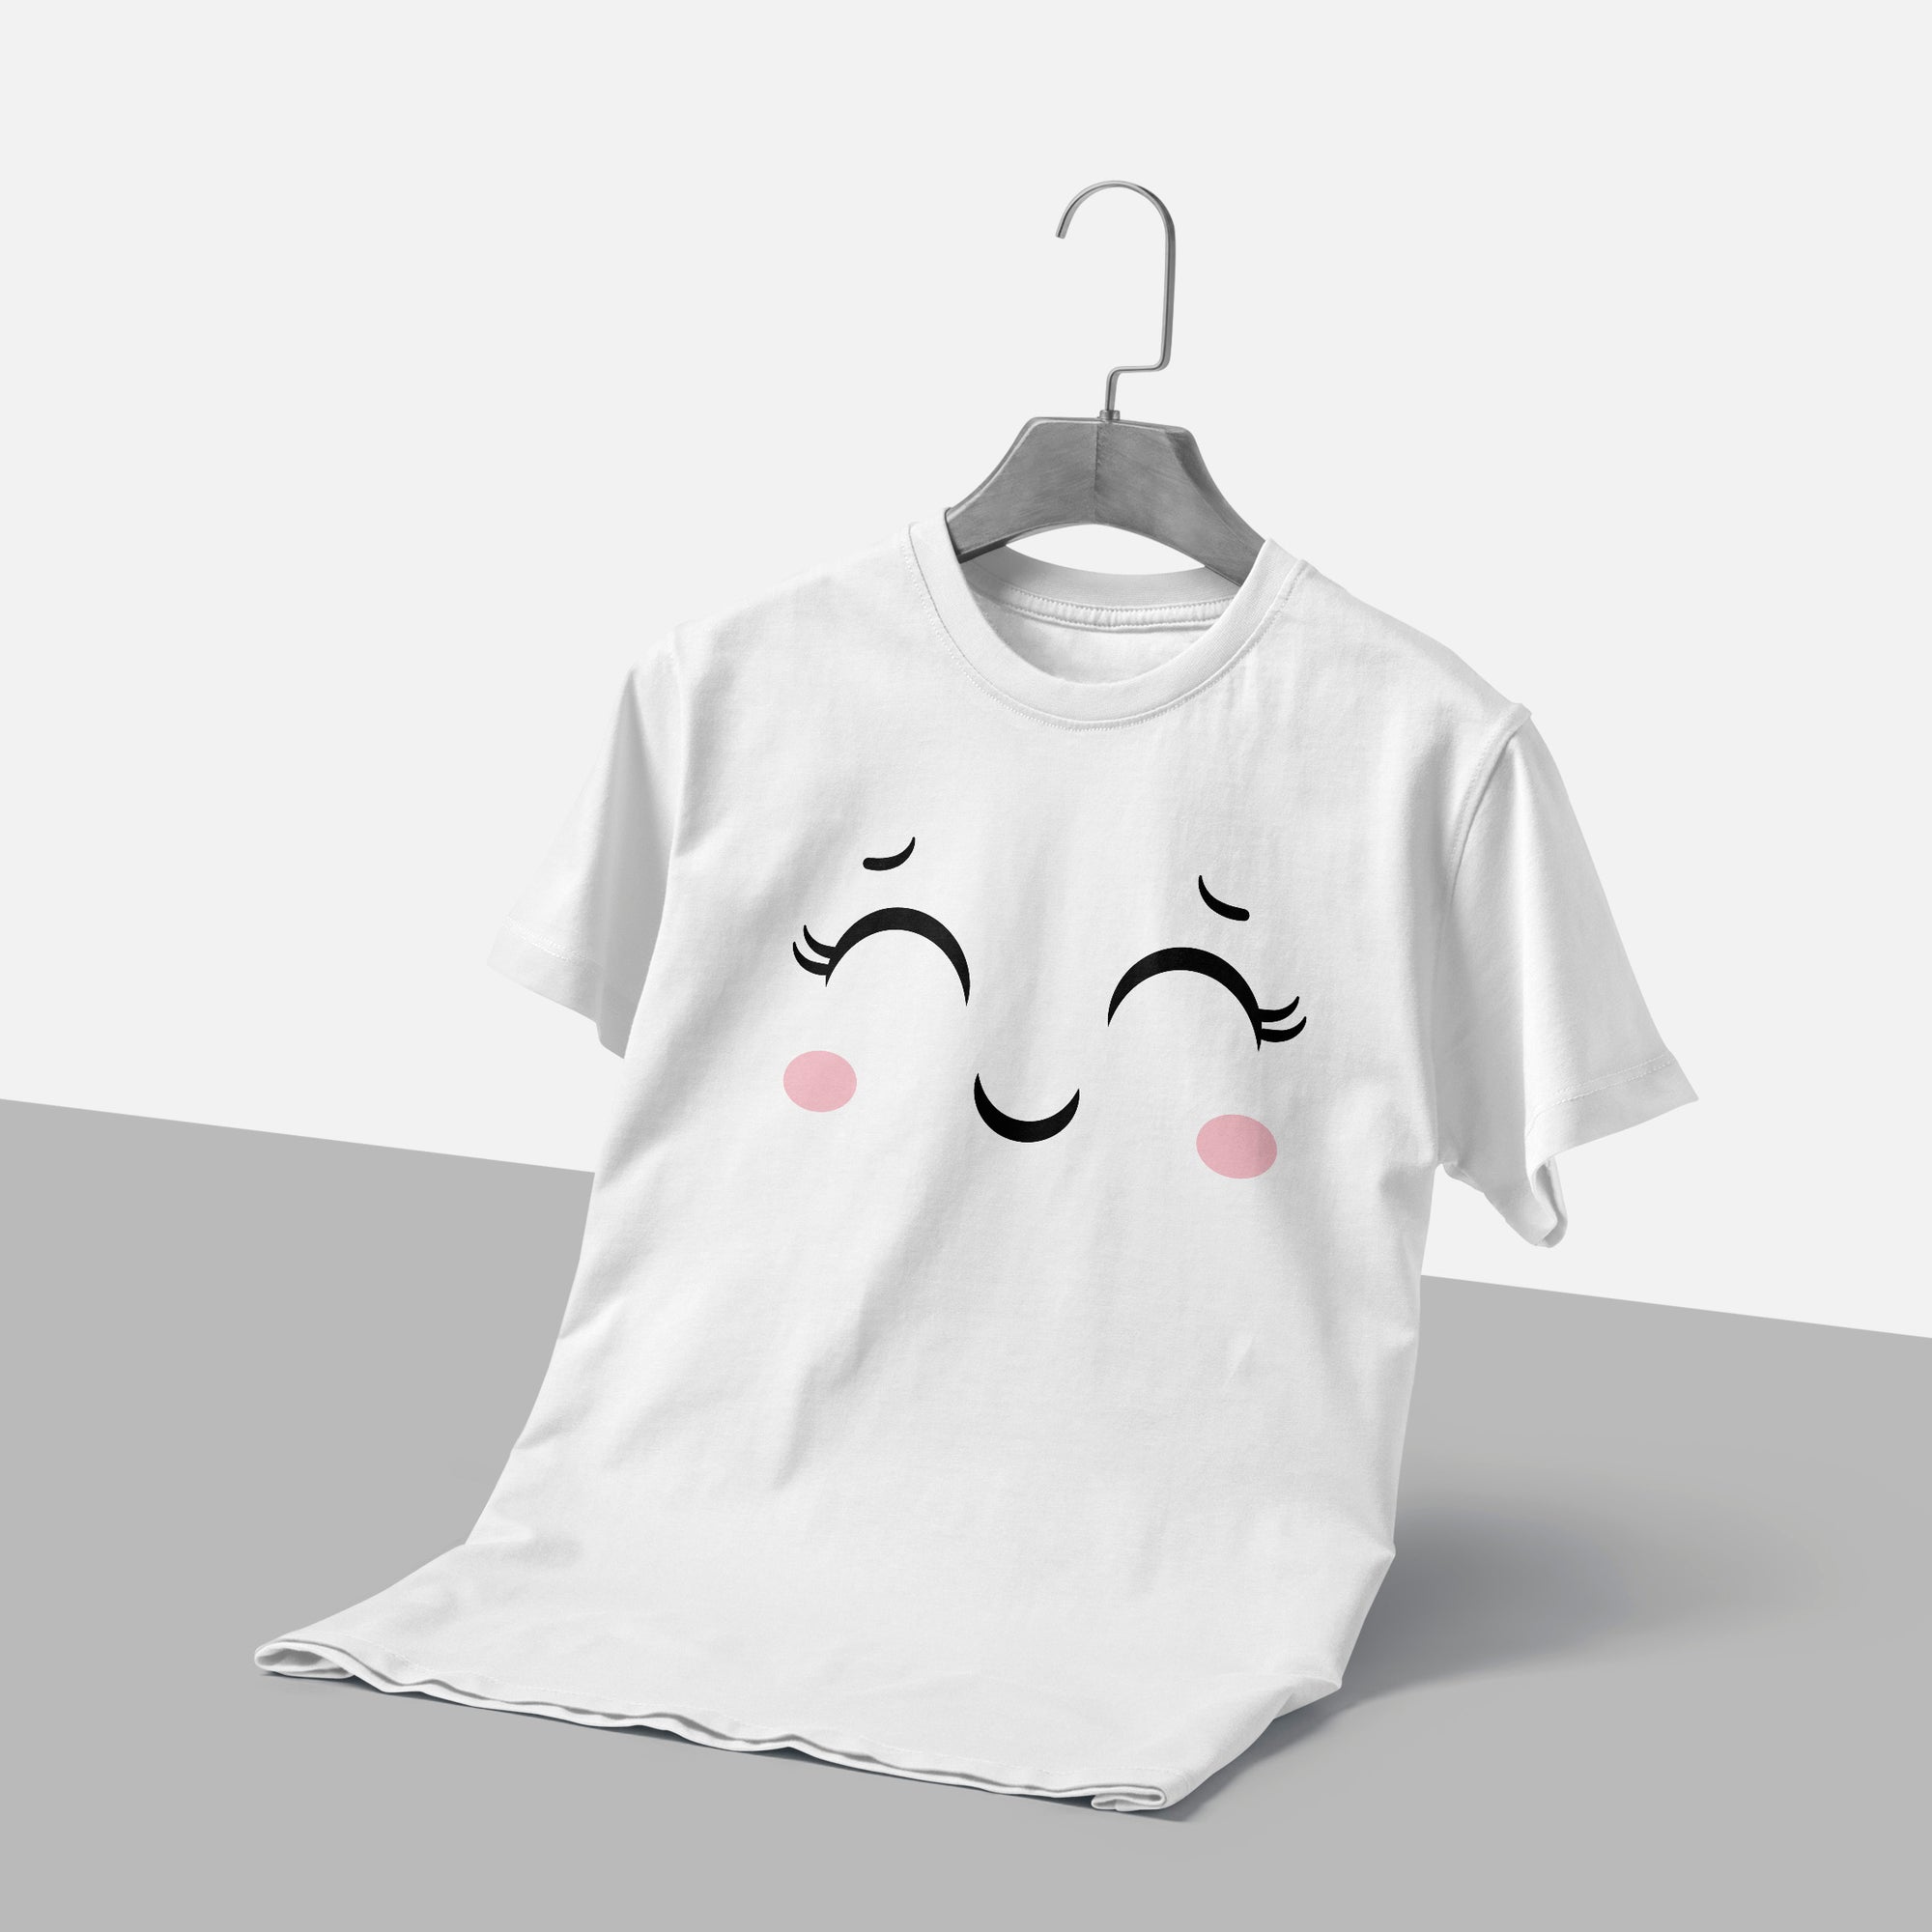 Wink and Kiss Kawaii Face T-Shirt